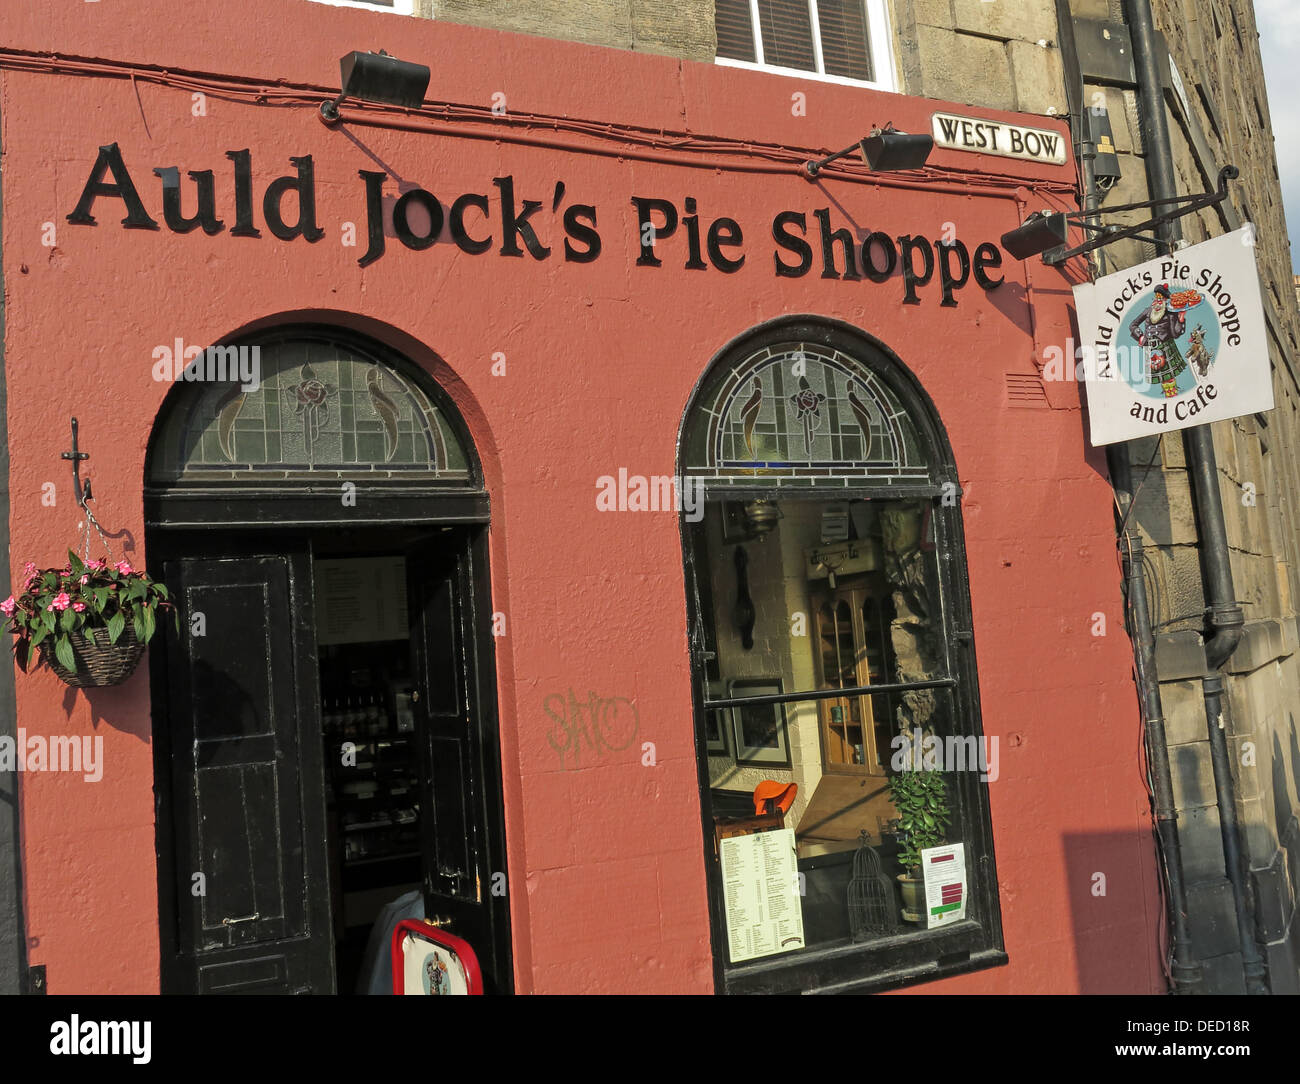 Auld Jocks Pie Shoppe, West Bow, Top of Grassmarket, Édimbourg, Écosse, ROYAUME-UNI, EH1 2HH Banque D'Images